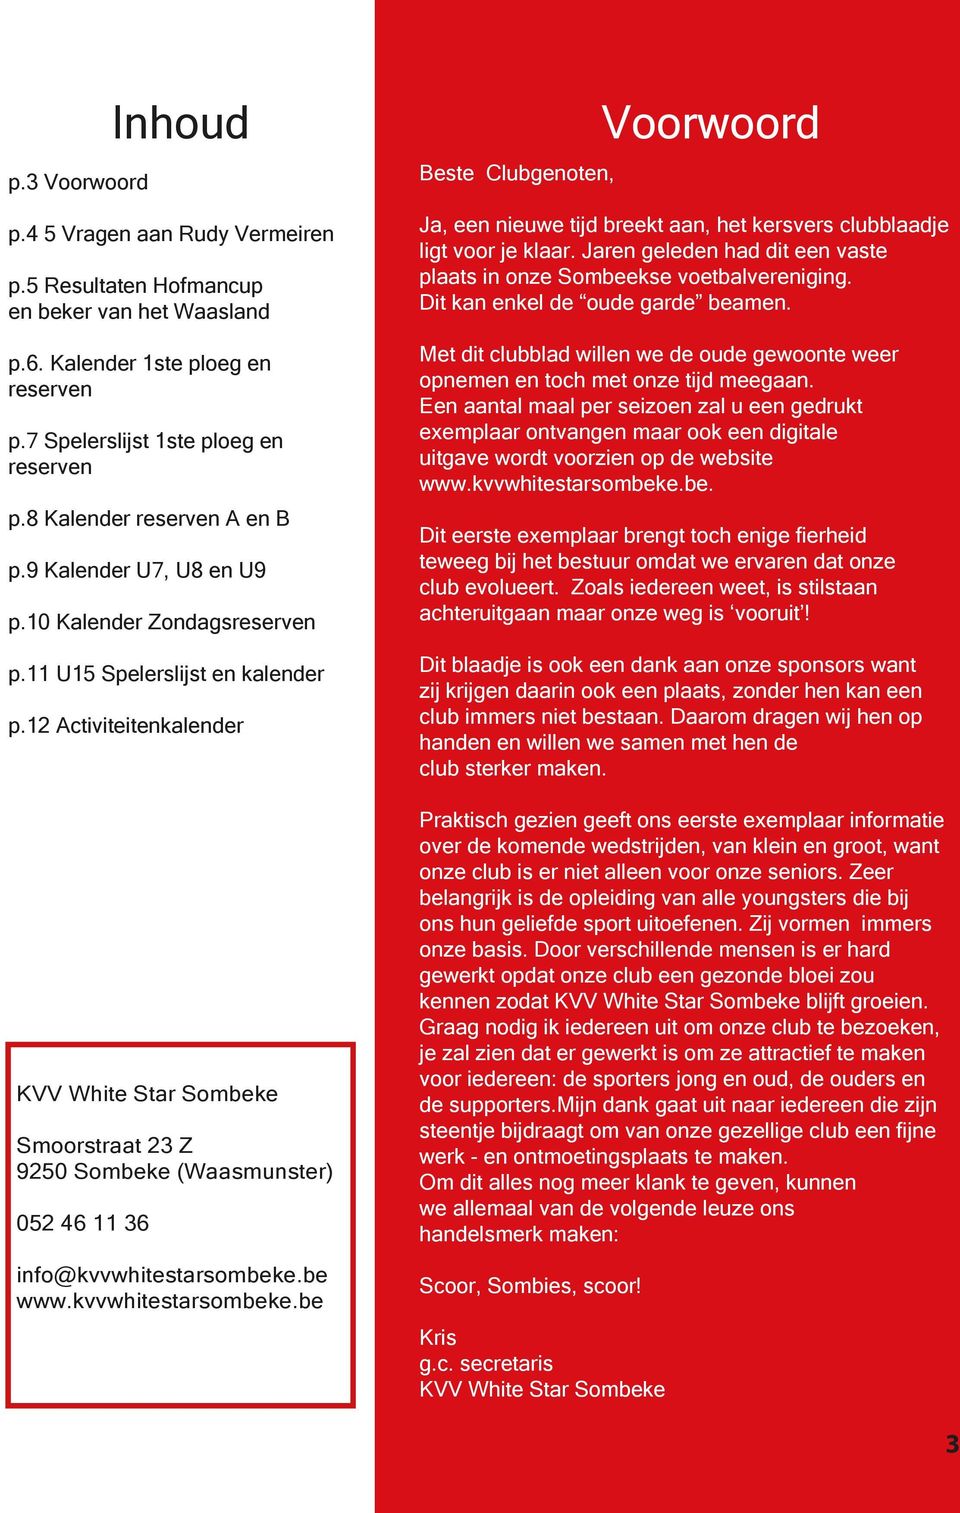 12 Activiteitenkalender KVV White Star Sombeke Smoorstraat 23 Z 9250 Sombeke (Waasmunster) 052 46 11 36 info@kvvwhitestarsombeke.